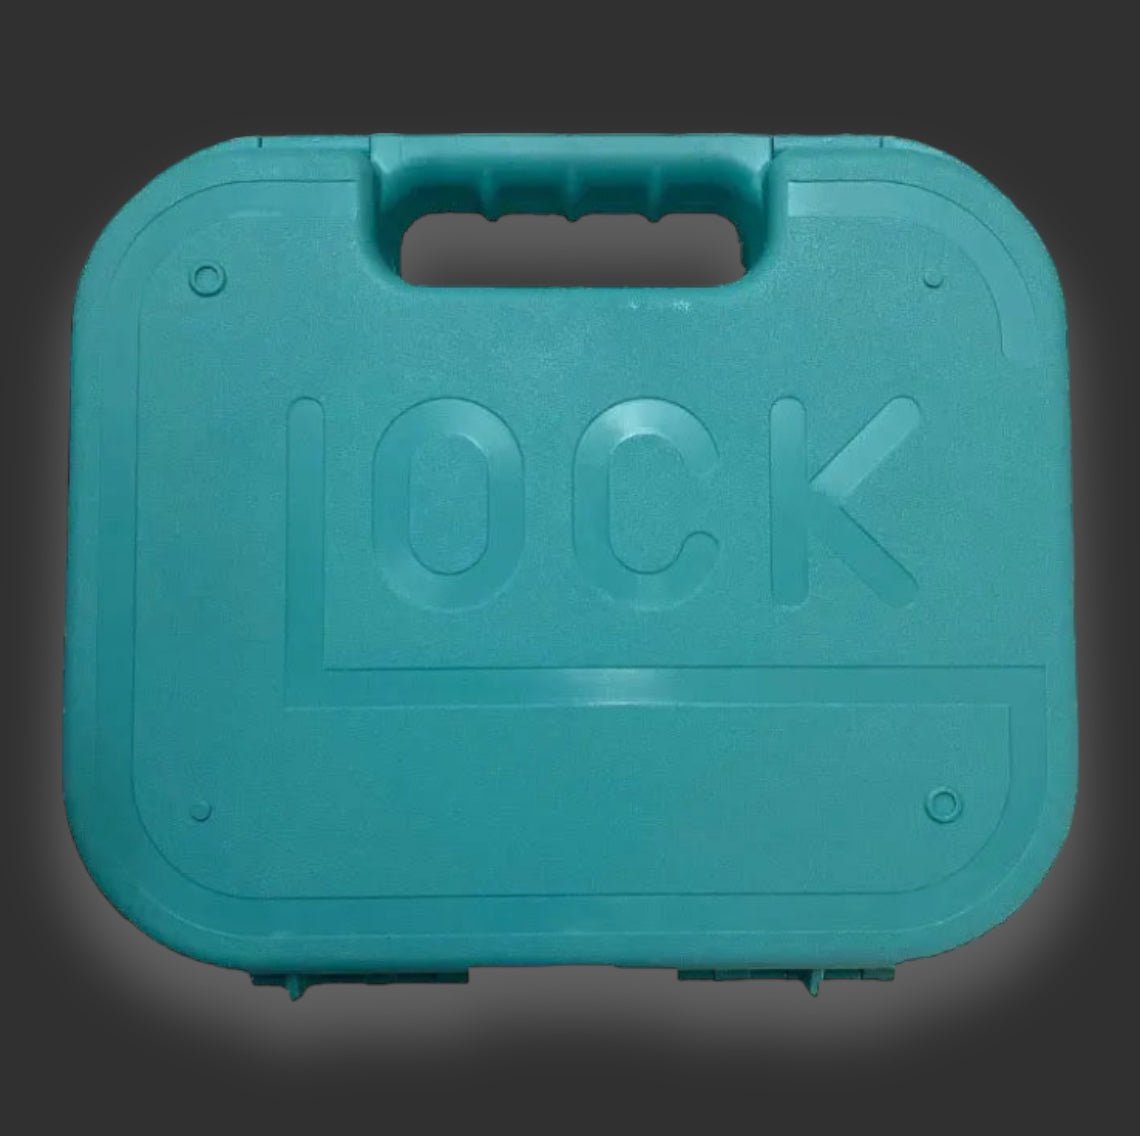 Glock Safety Suitcase - BlasterMasters